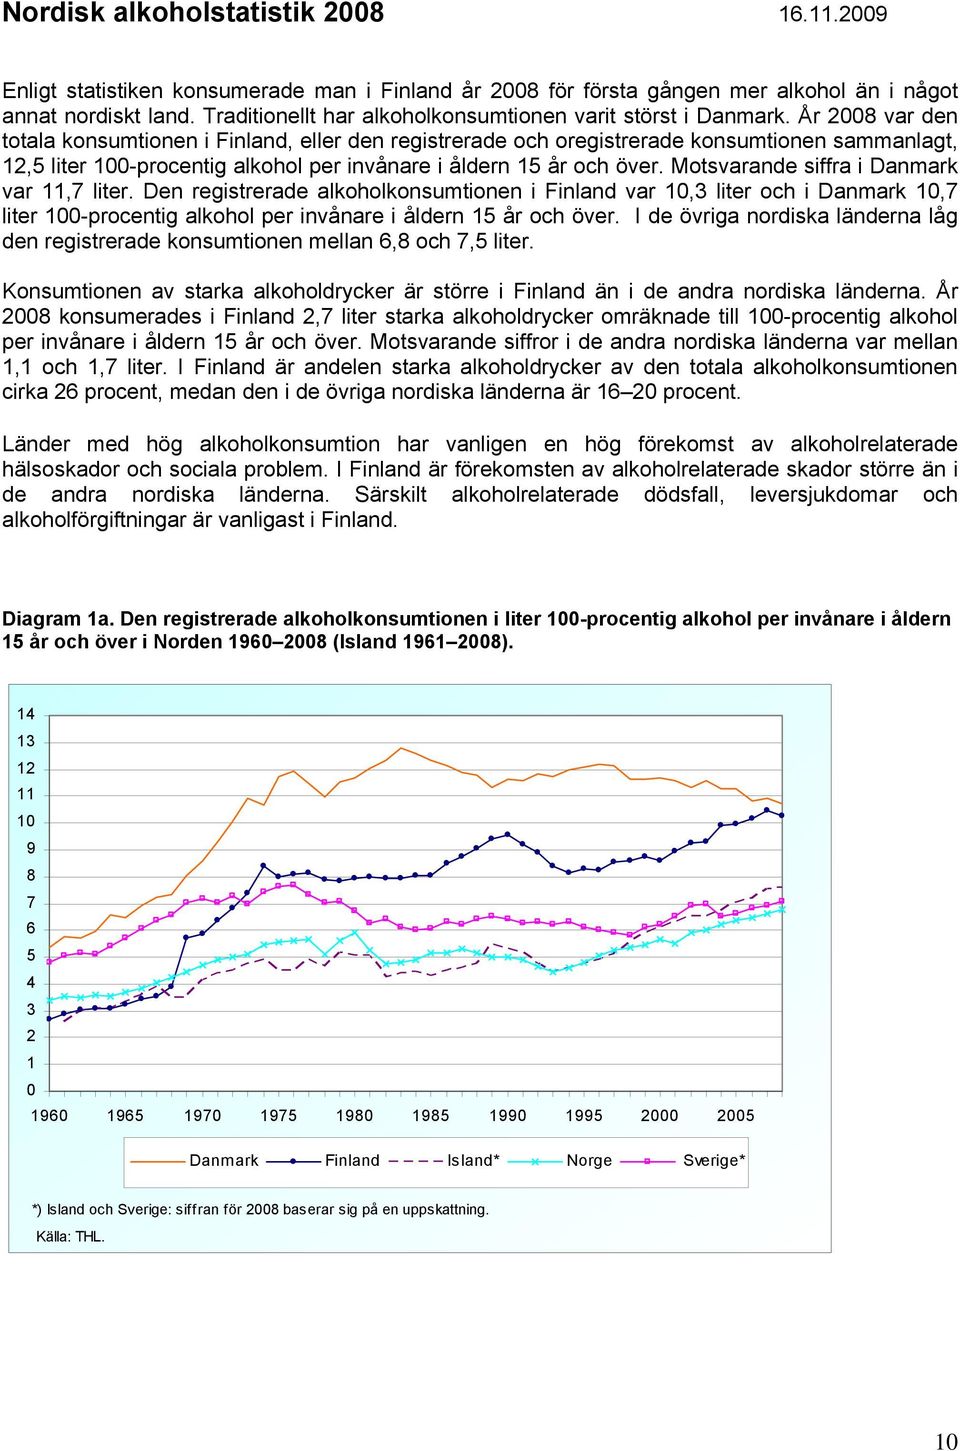 År 2008 var den totala konsumtionen i Finland, eller den registrerade och oregistrerade konsumtionen sammanlagt, 12,5 liter 100-procentig alkohol per invånare i åldern 15 år och över.